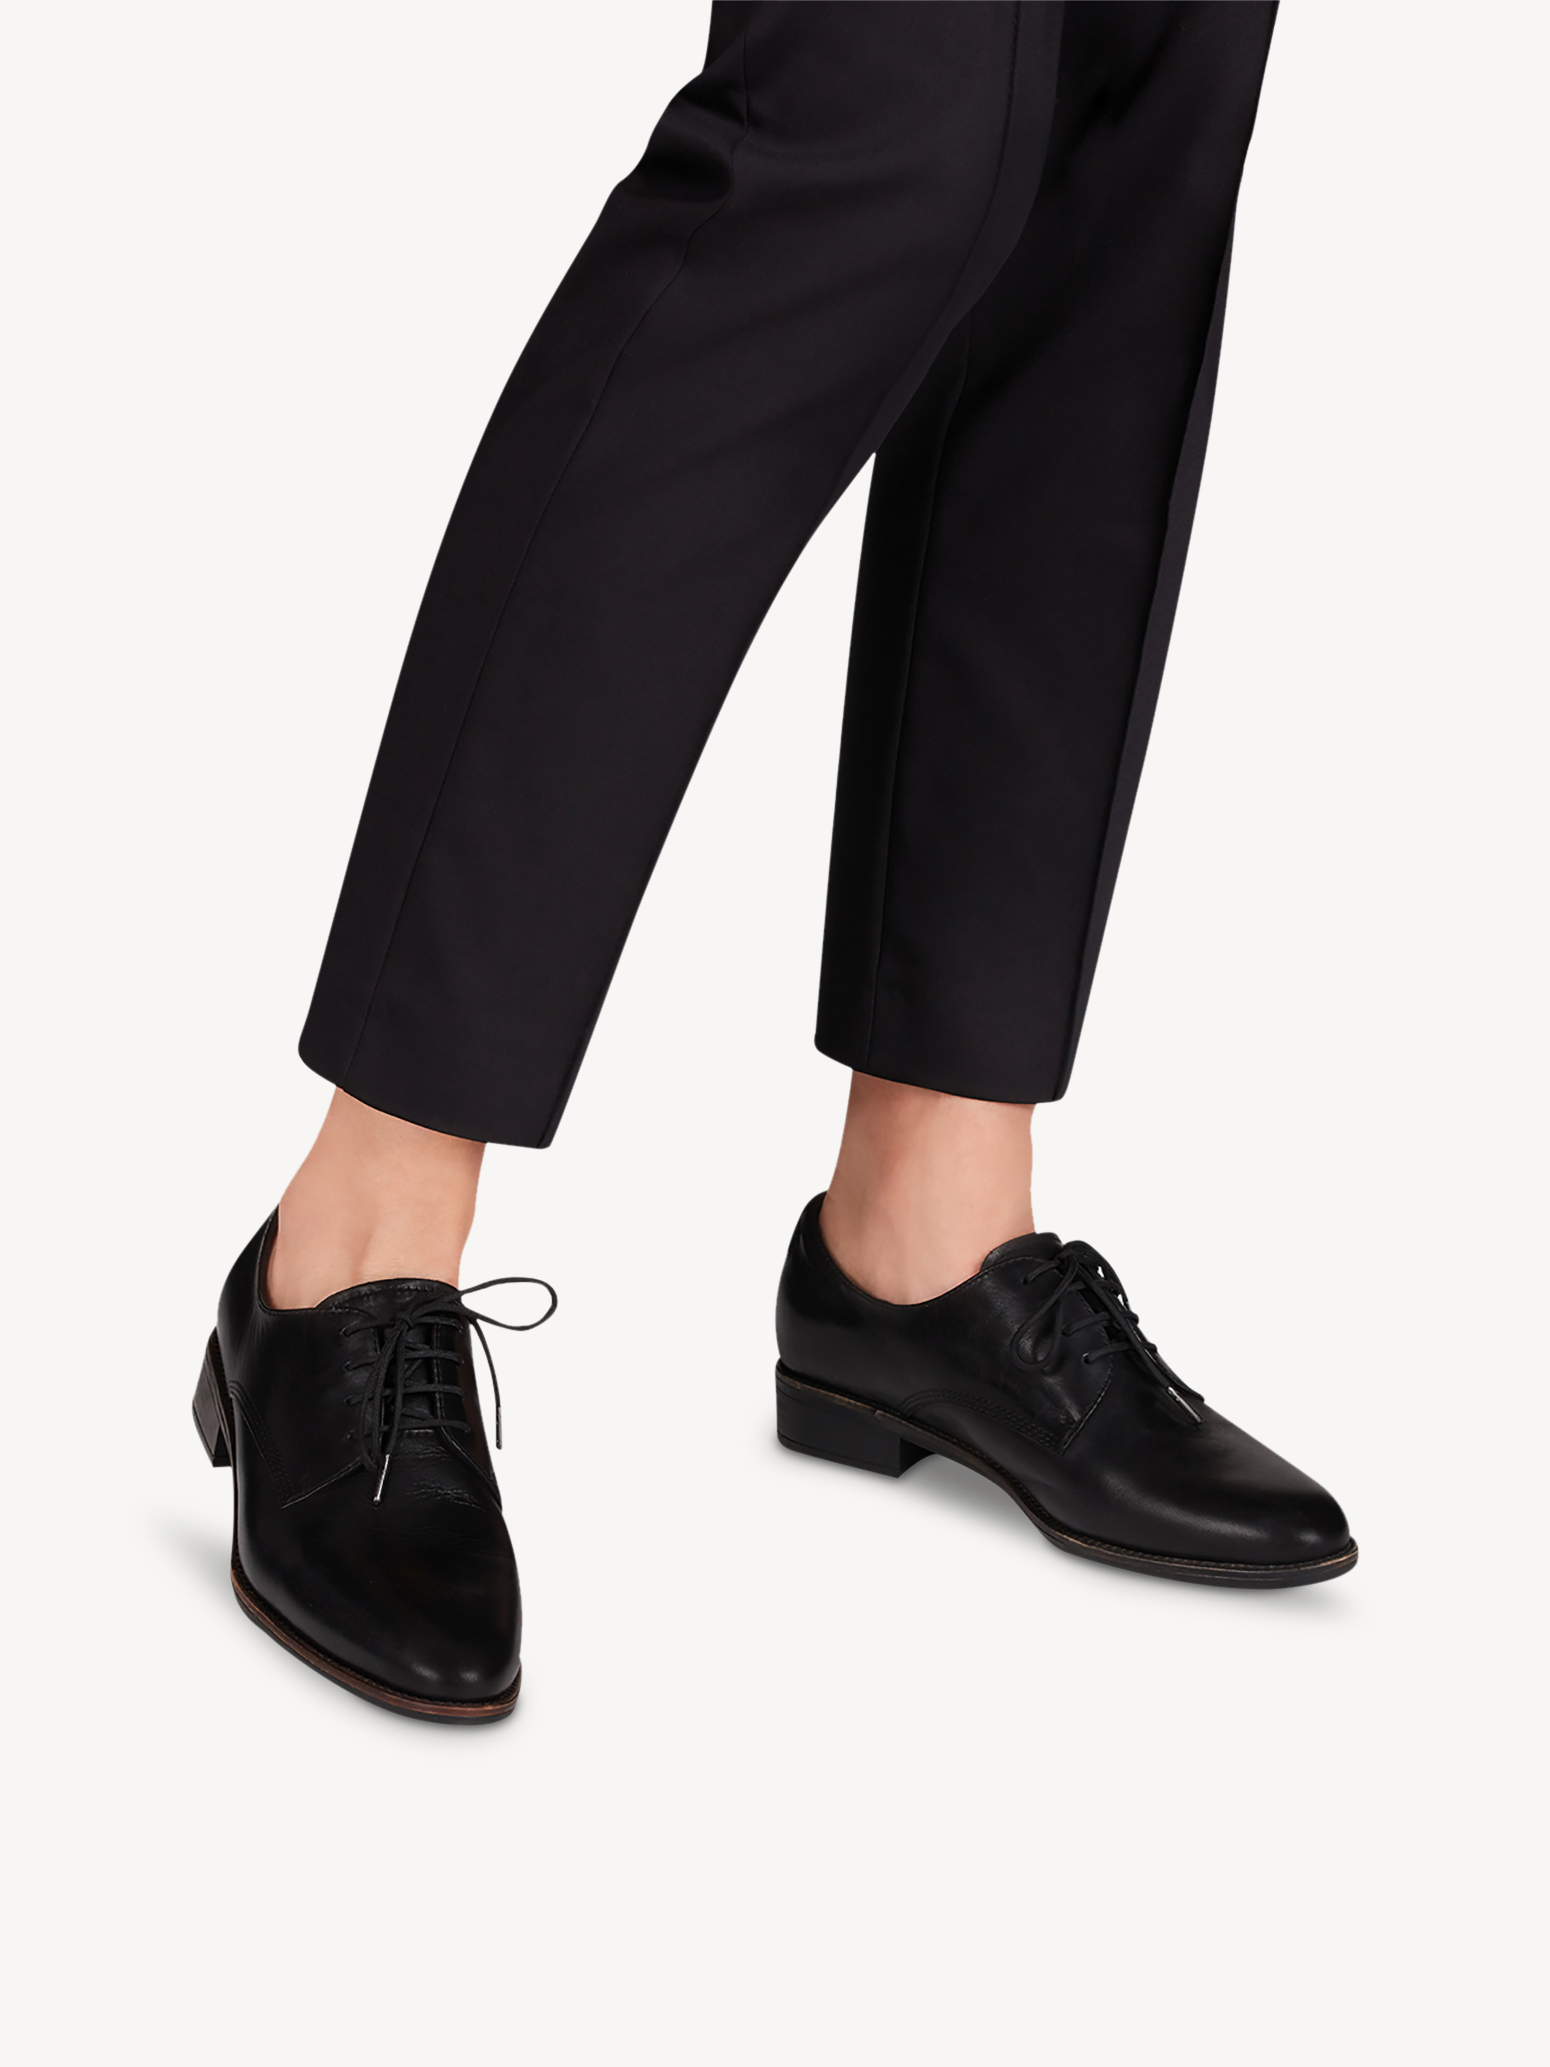 Ботинки на шнурках женские 5 AW20 (черный) - изображение №1